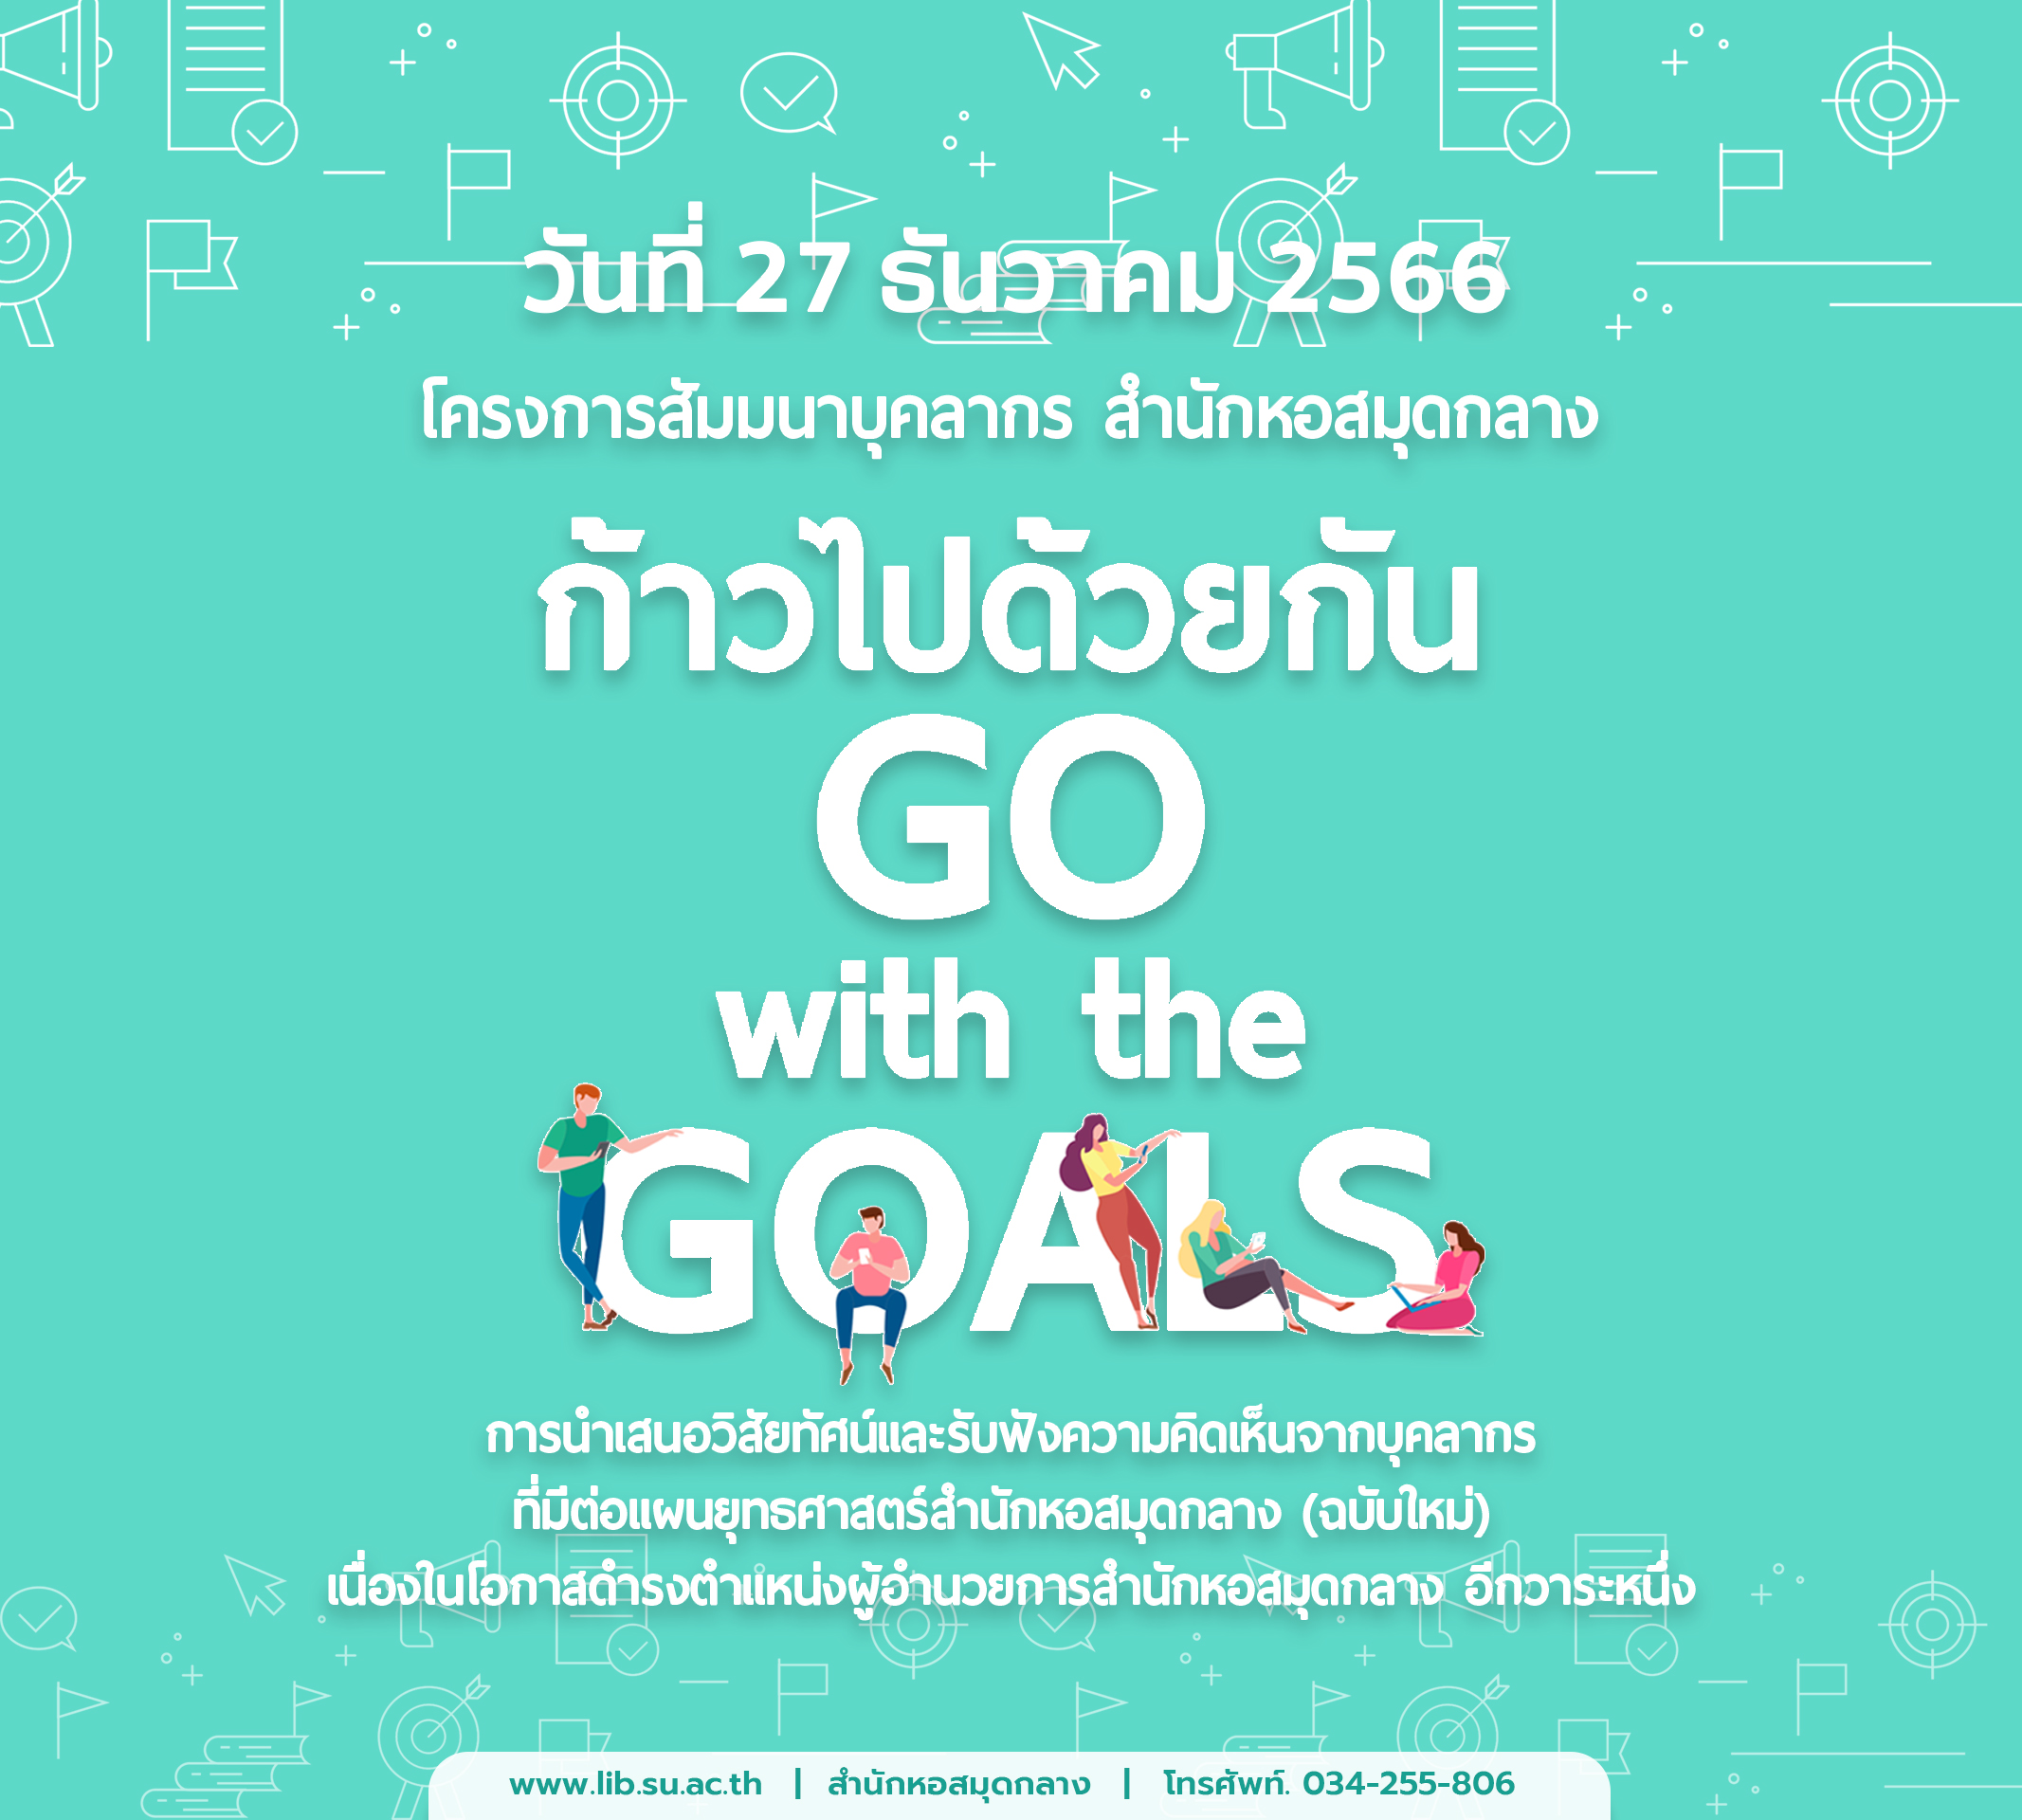 ทำบุญปีใหม่และโครงการสัมมนาบุคลากร เรื่อง “ ก้าวไปด้วยกัน (Go with the Goals)”